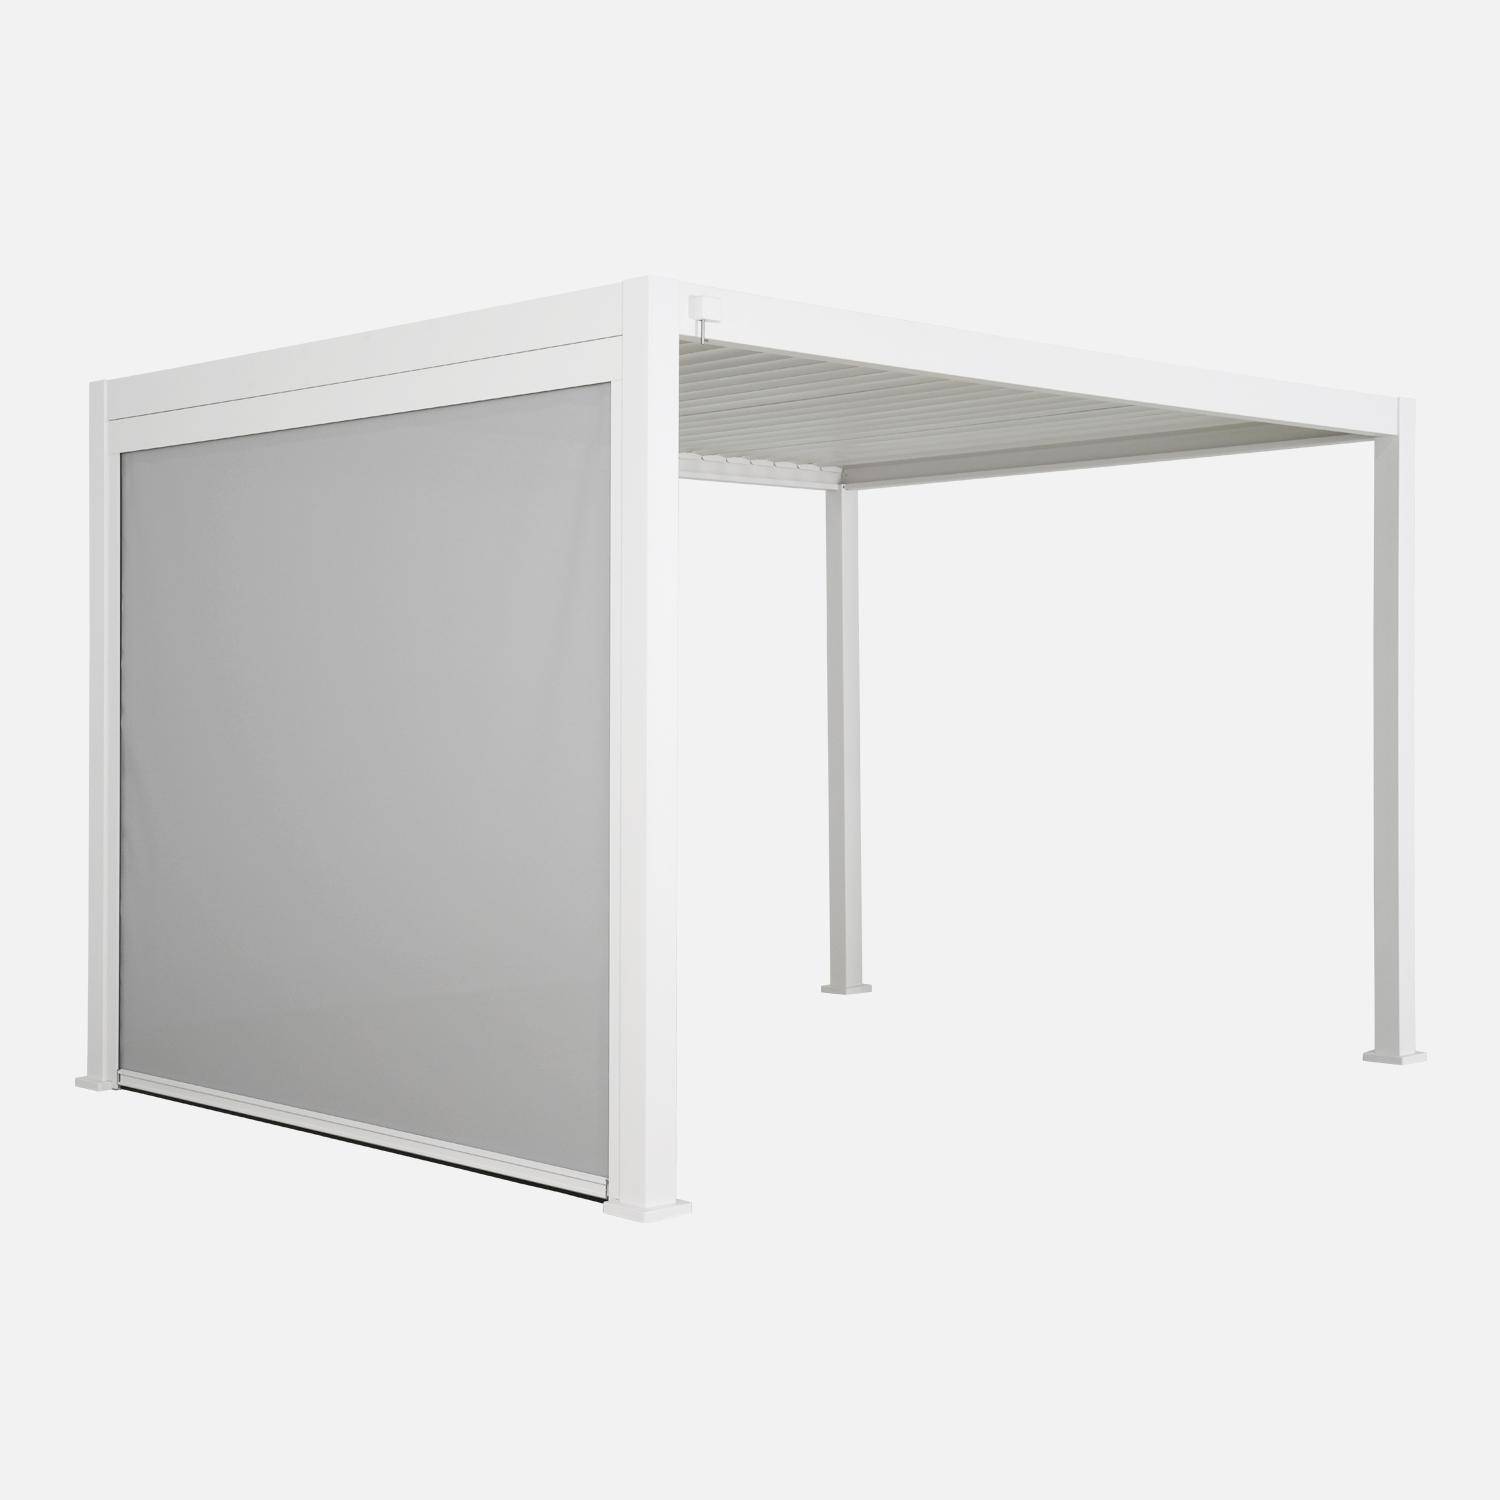 Pergola Bioclimatique blanche – Triomphe – 300x400cm, aluminium, à lames orientables + store 300cm,sweeek,Photo2